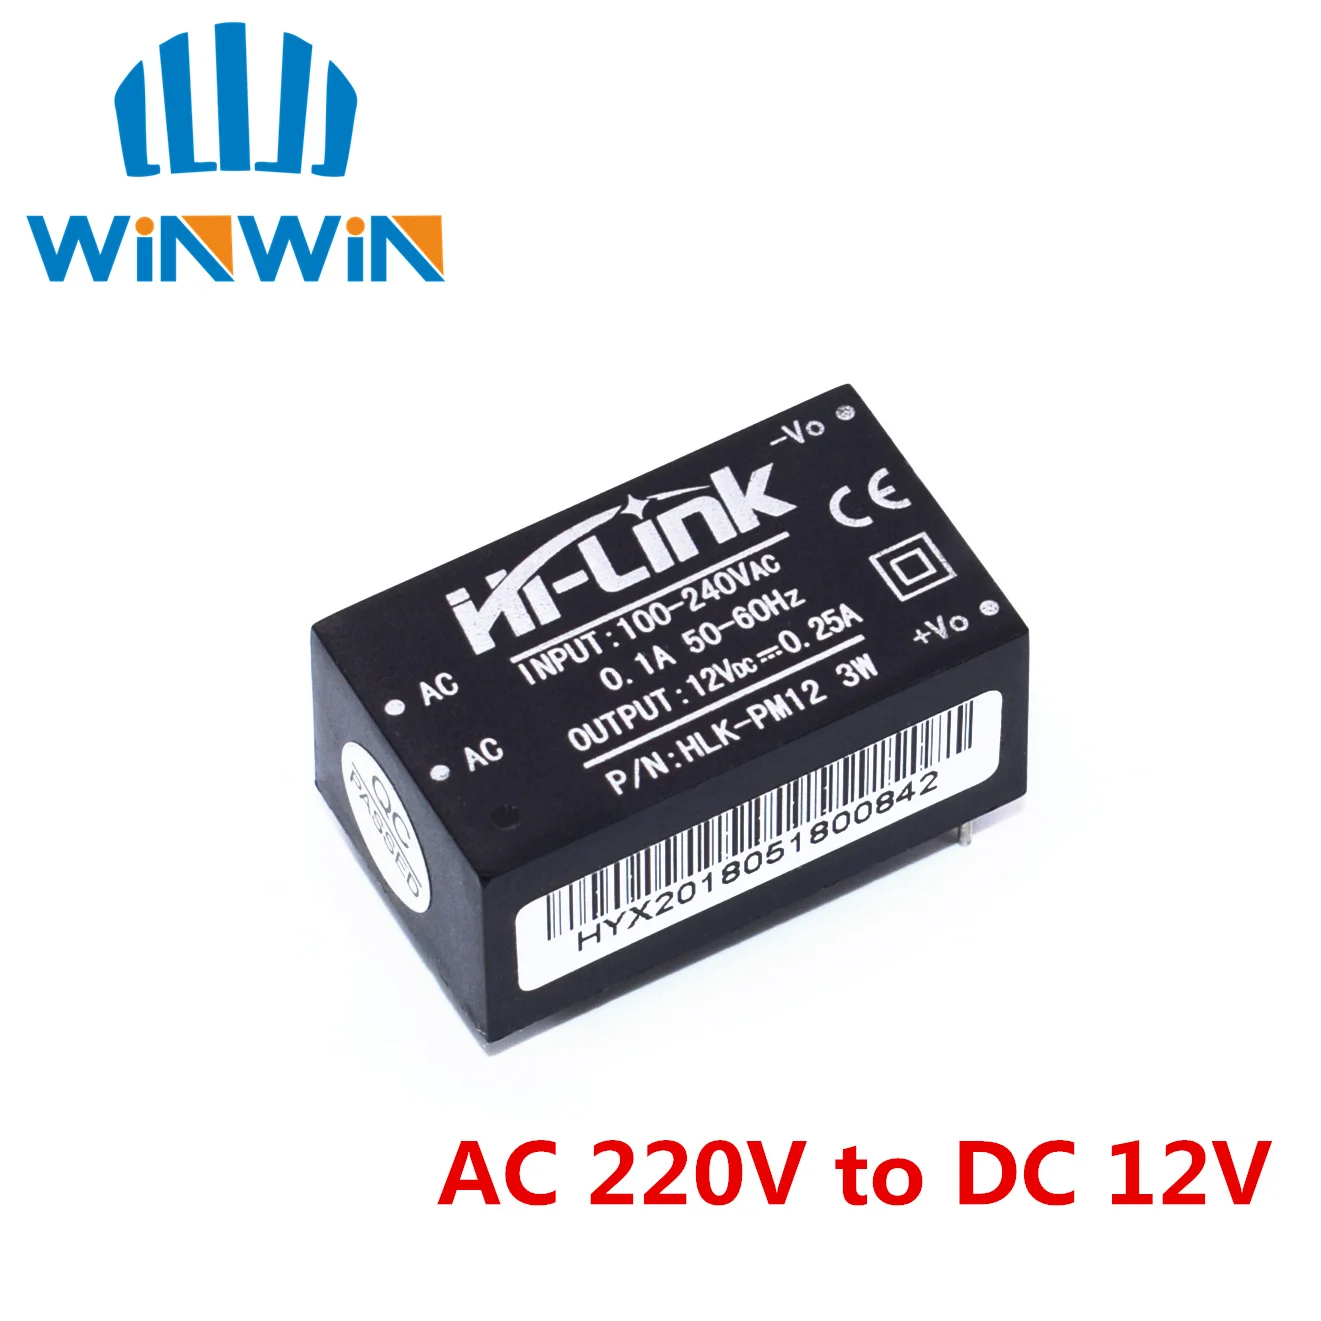 10 шт. HLK-PM01 HLK-PM03 HLK-PM12 AC-DC 220V мини модуля питания, интеллигентая(ый) бытовой выключатель питания модуль